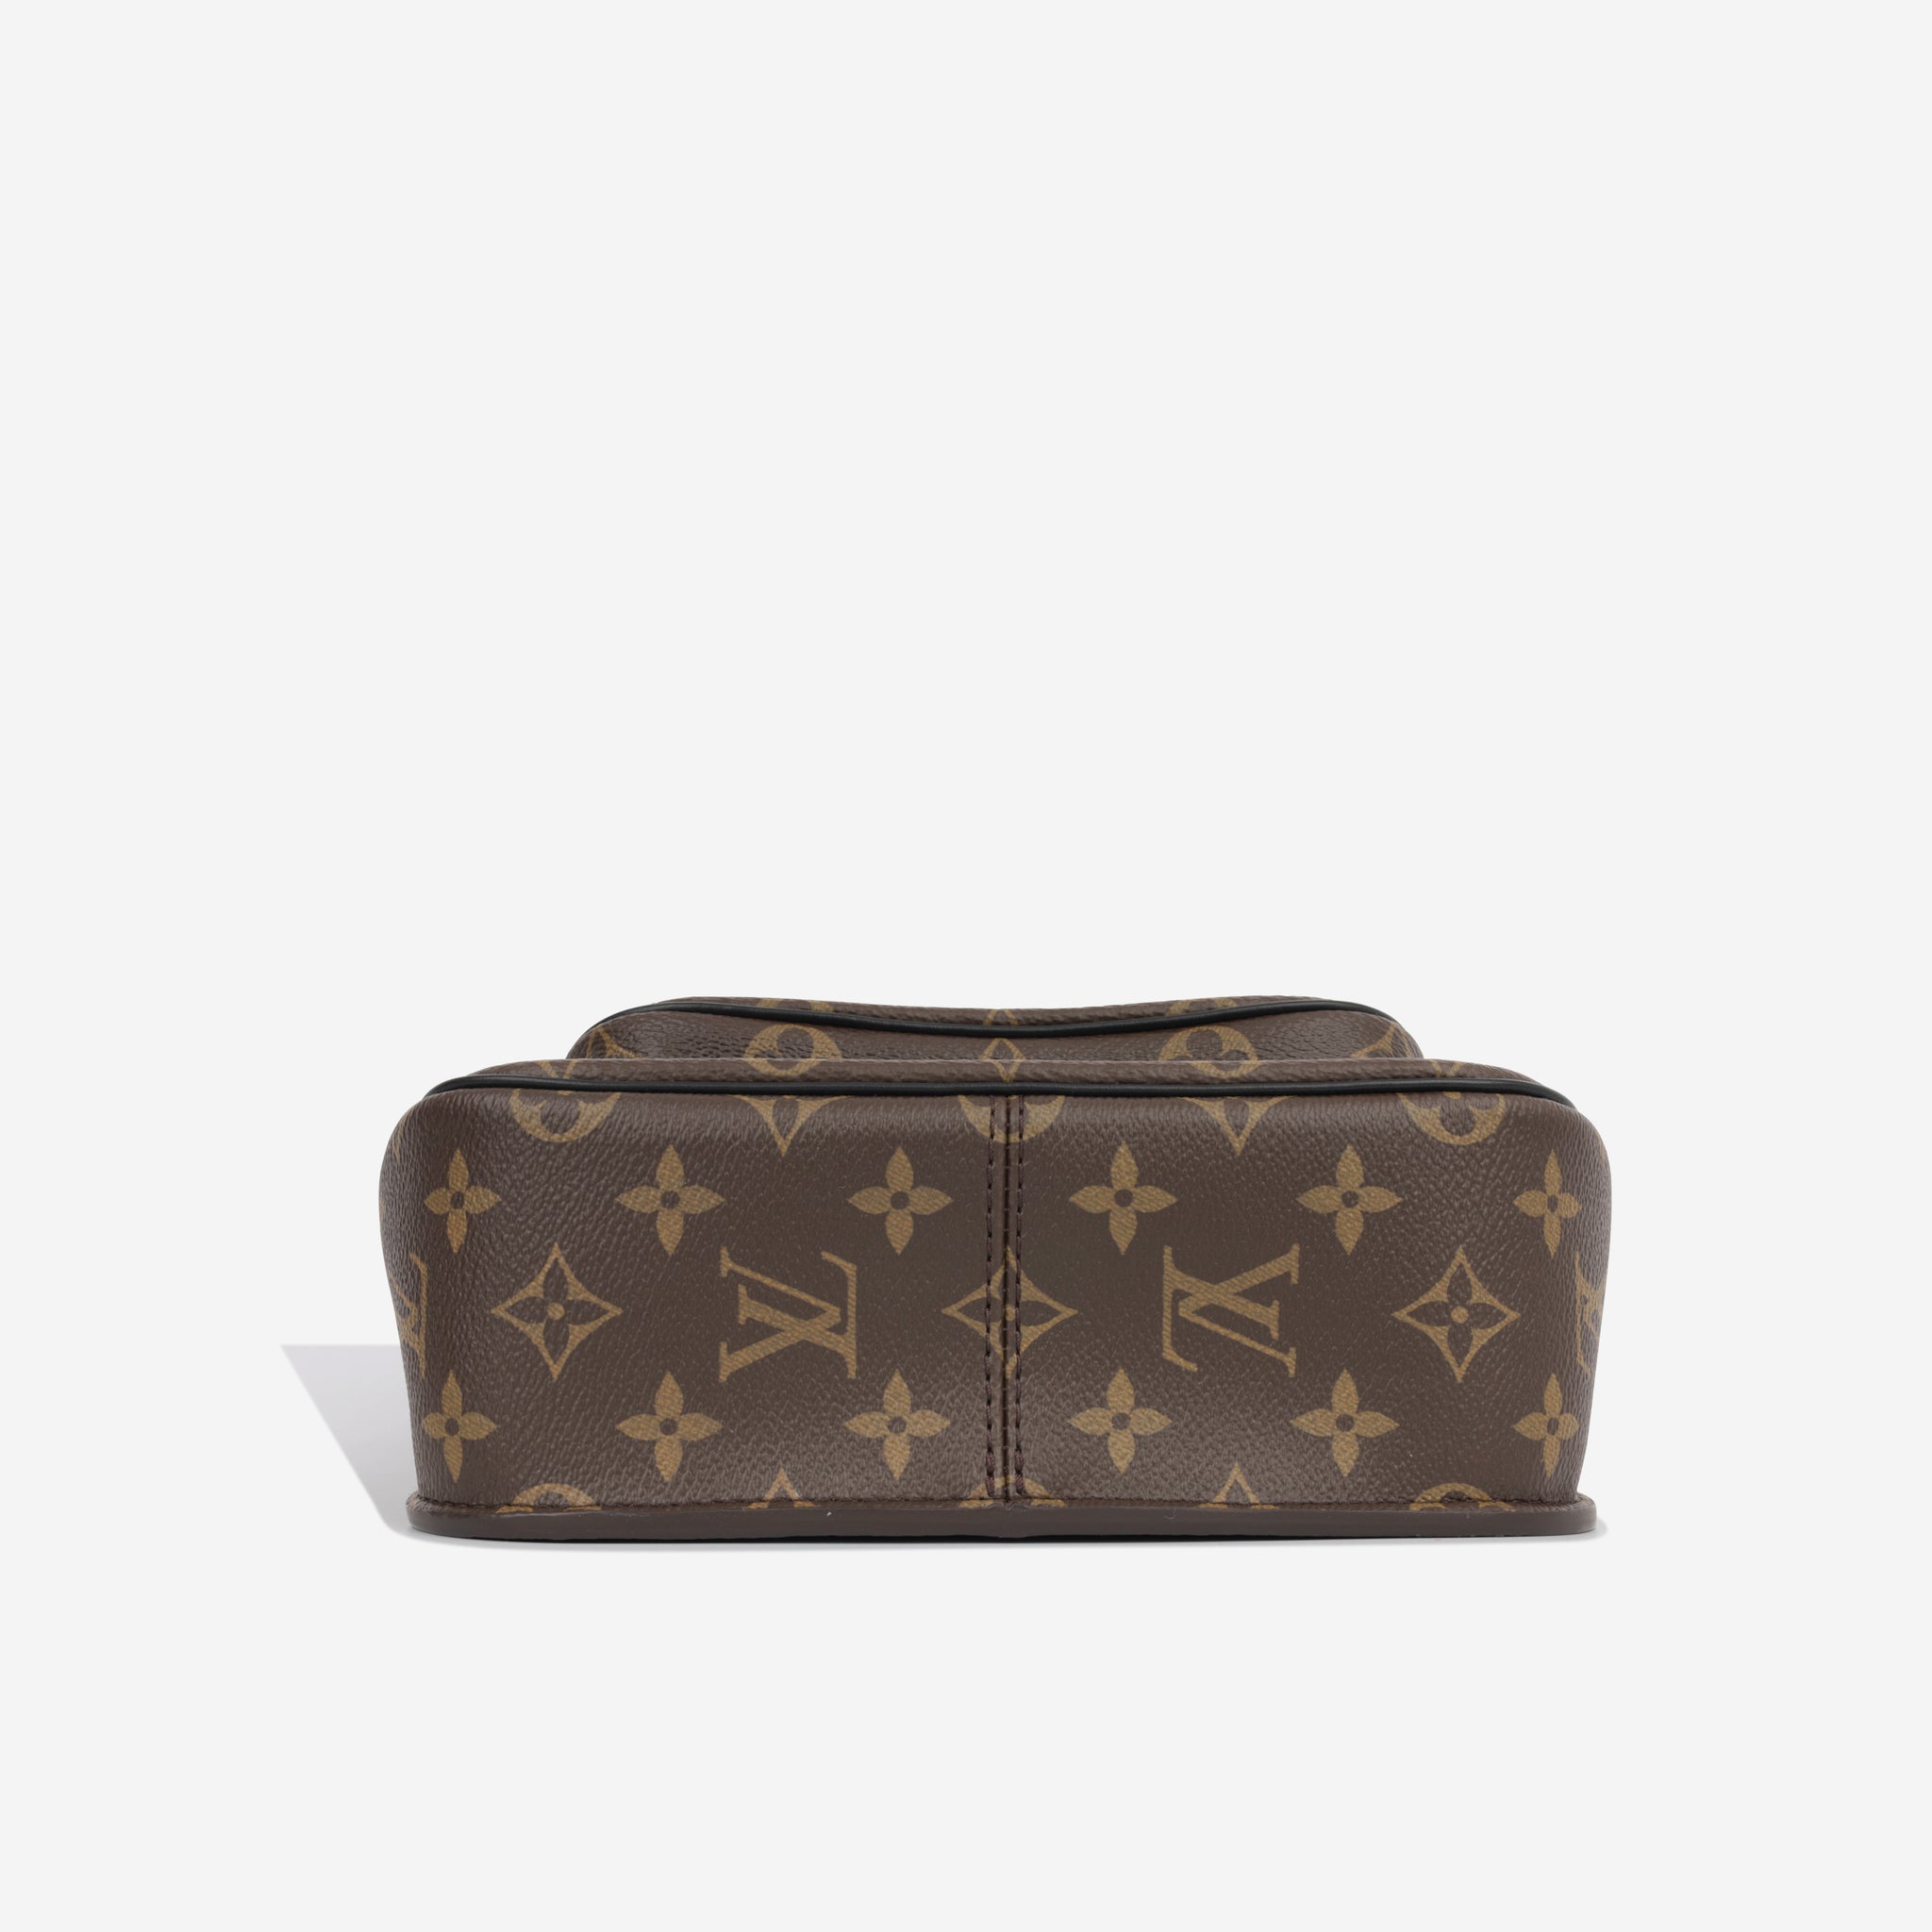 Louis Vuitton Passy NM Monogram Canvas Shoulder Bag